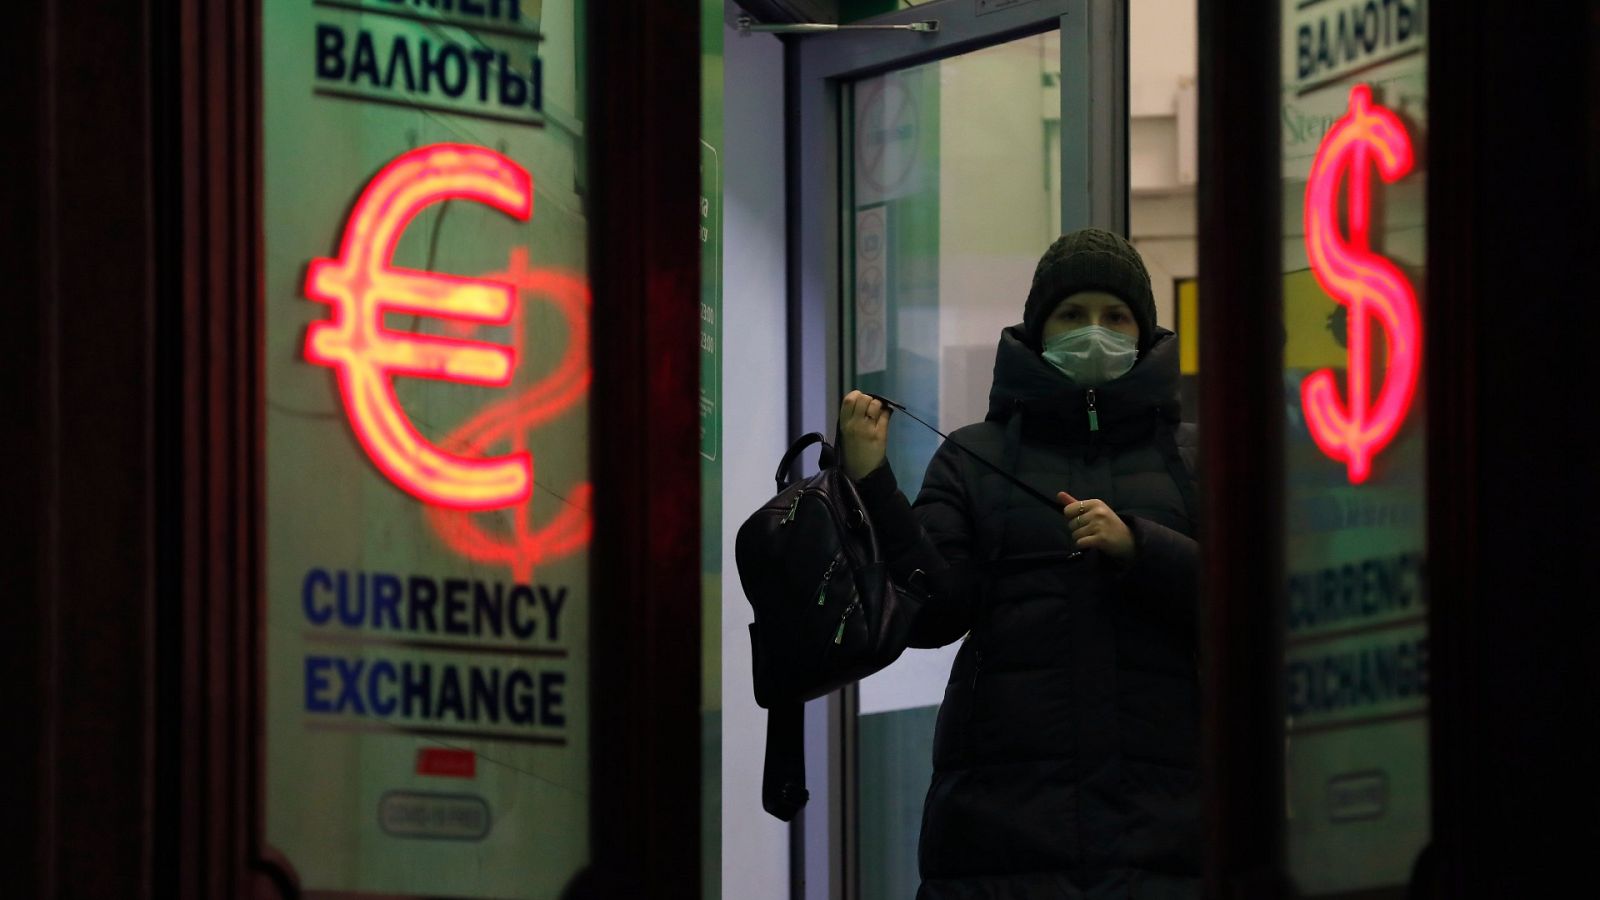 Rusia impone un 'corralito' e impide retirar más de 10.000 dólares en otras divisas